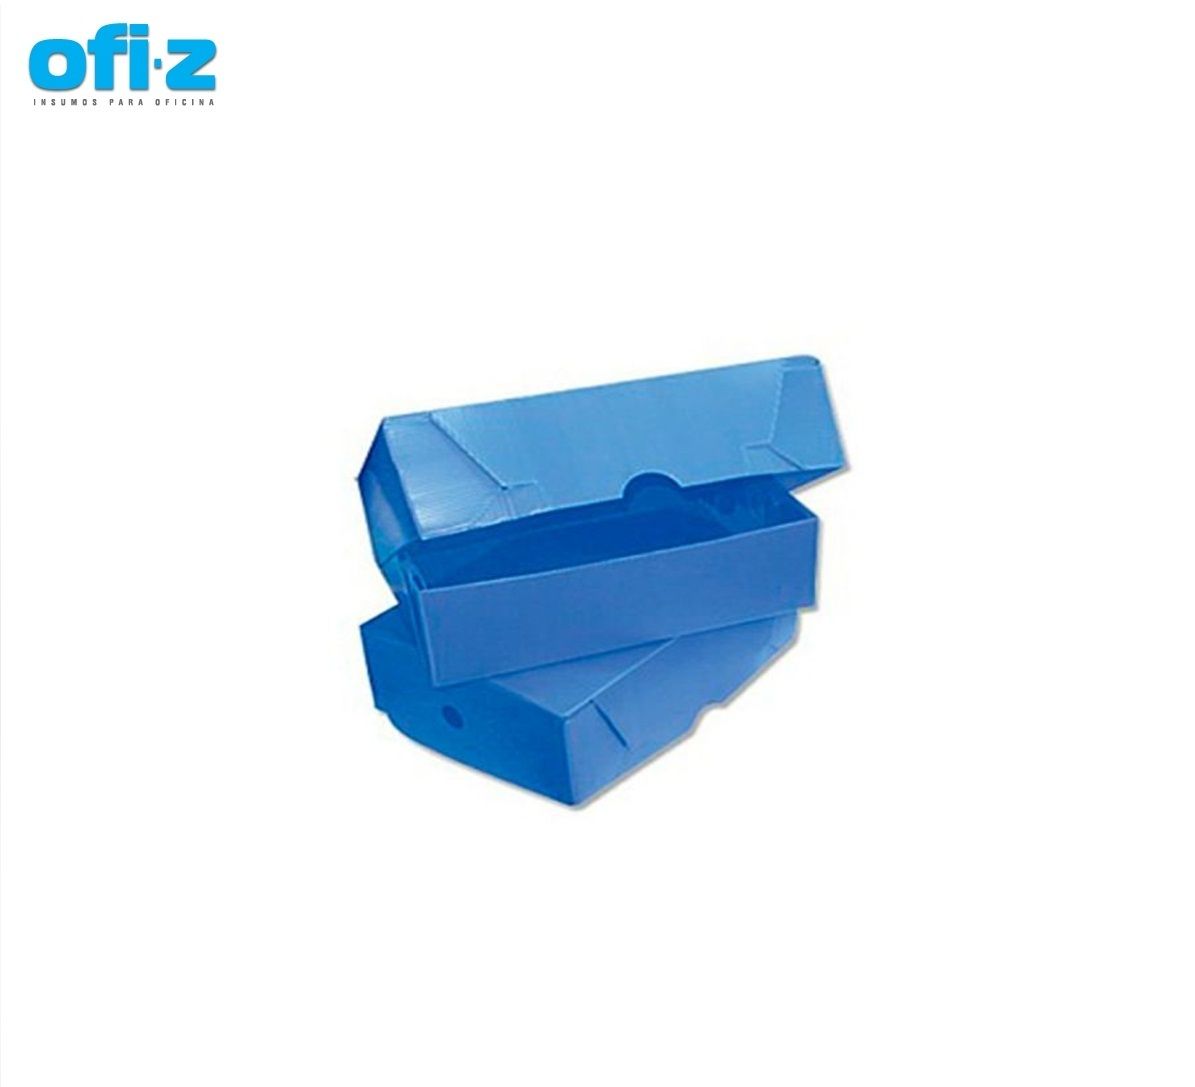 Caja archivo azul. T/Volcada OF 12 (36x25x12)CM